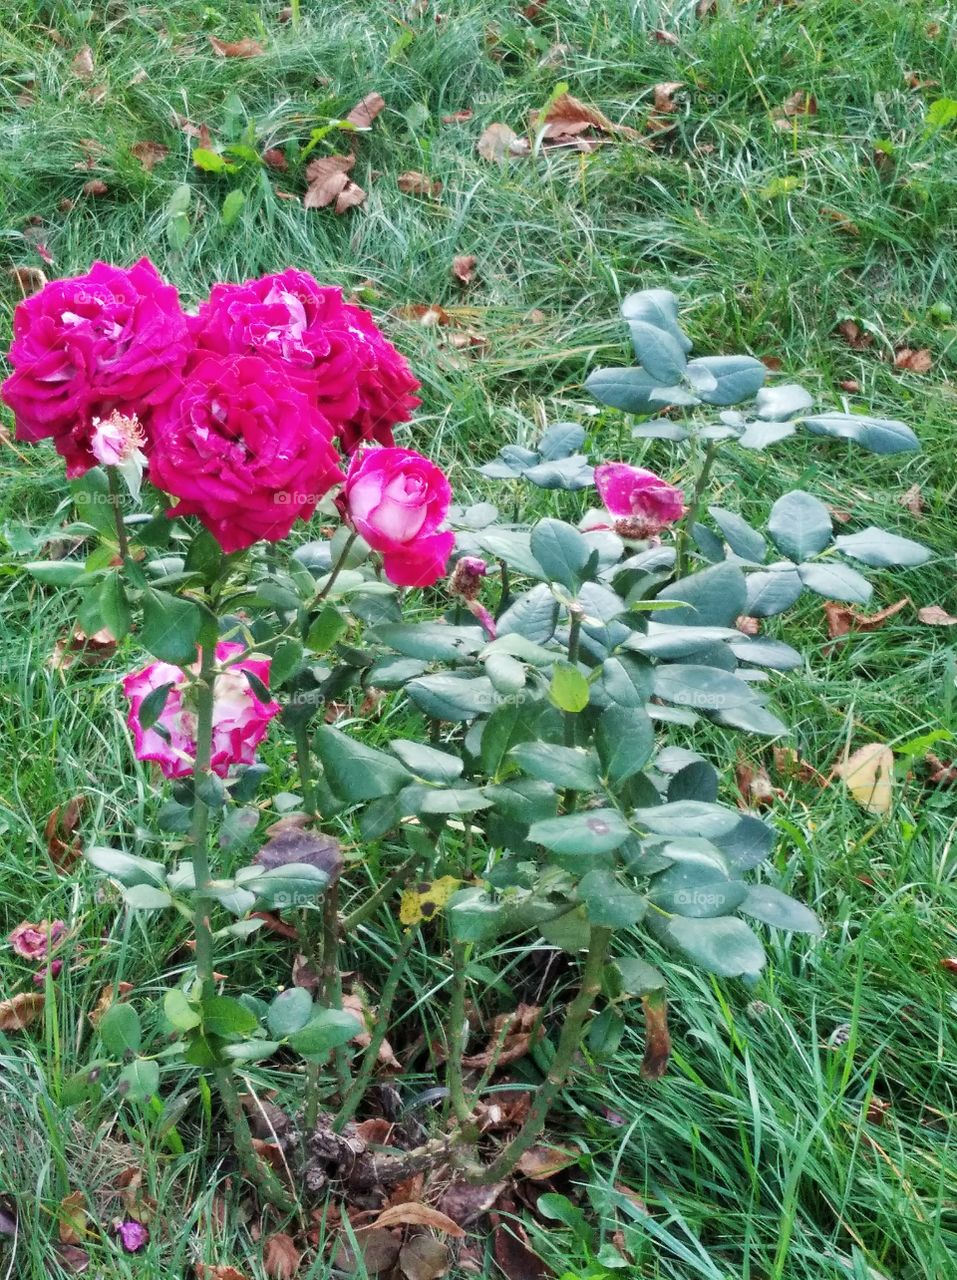 September roses